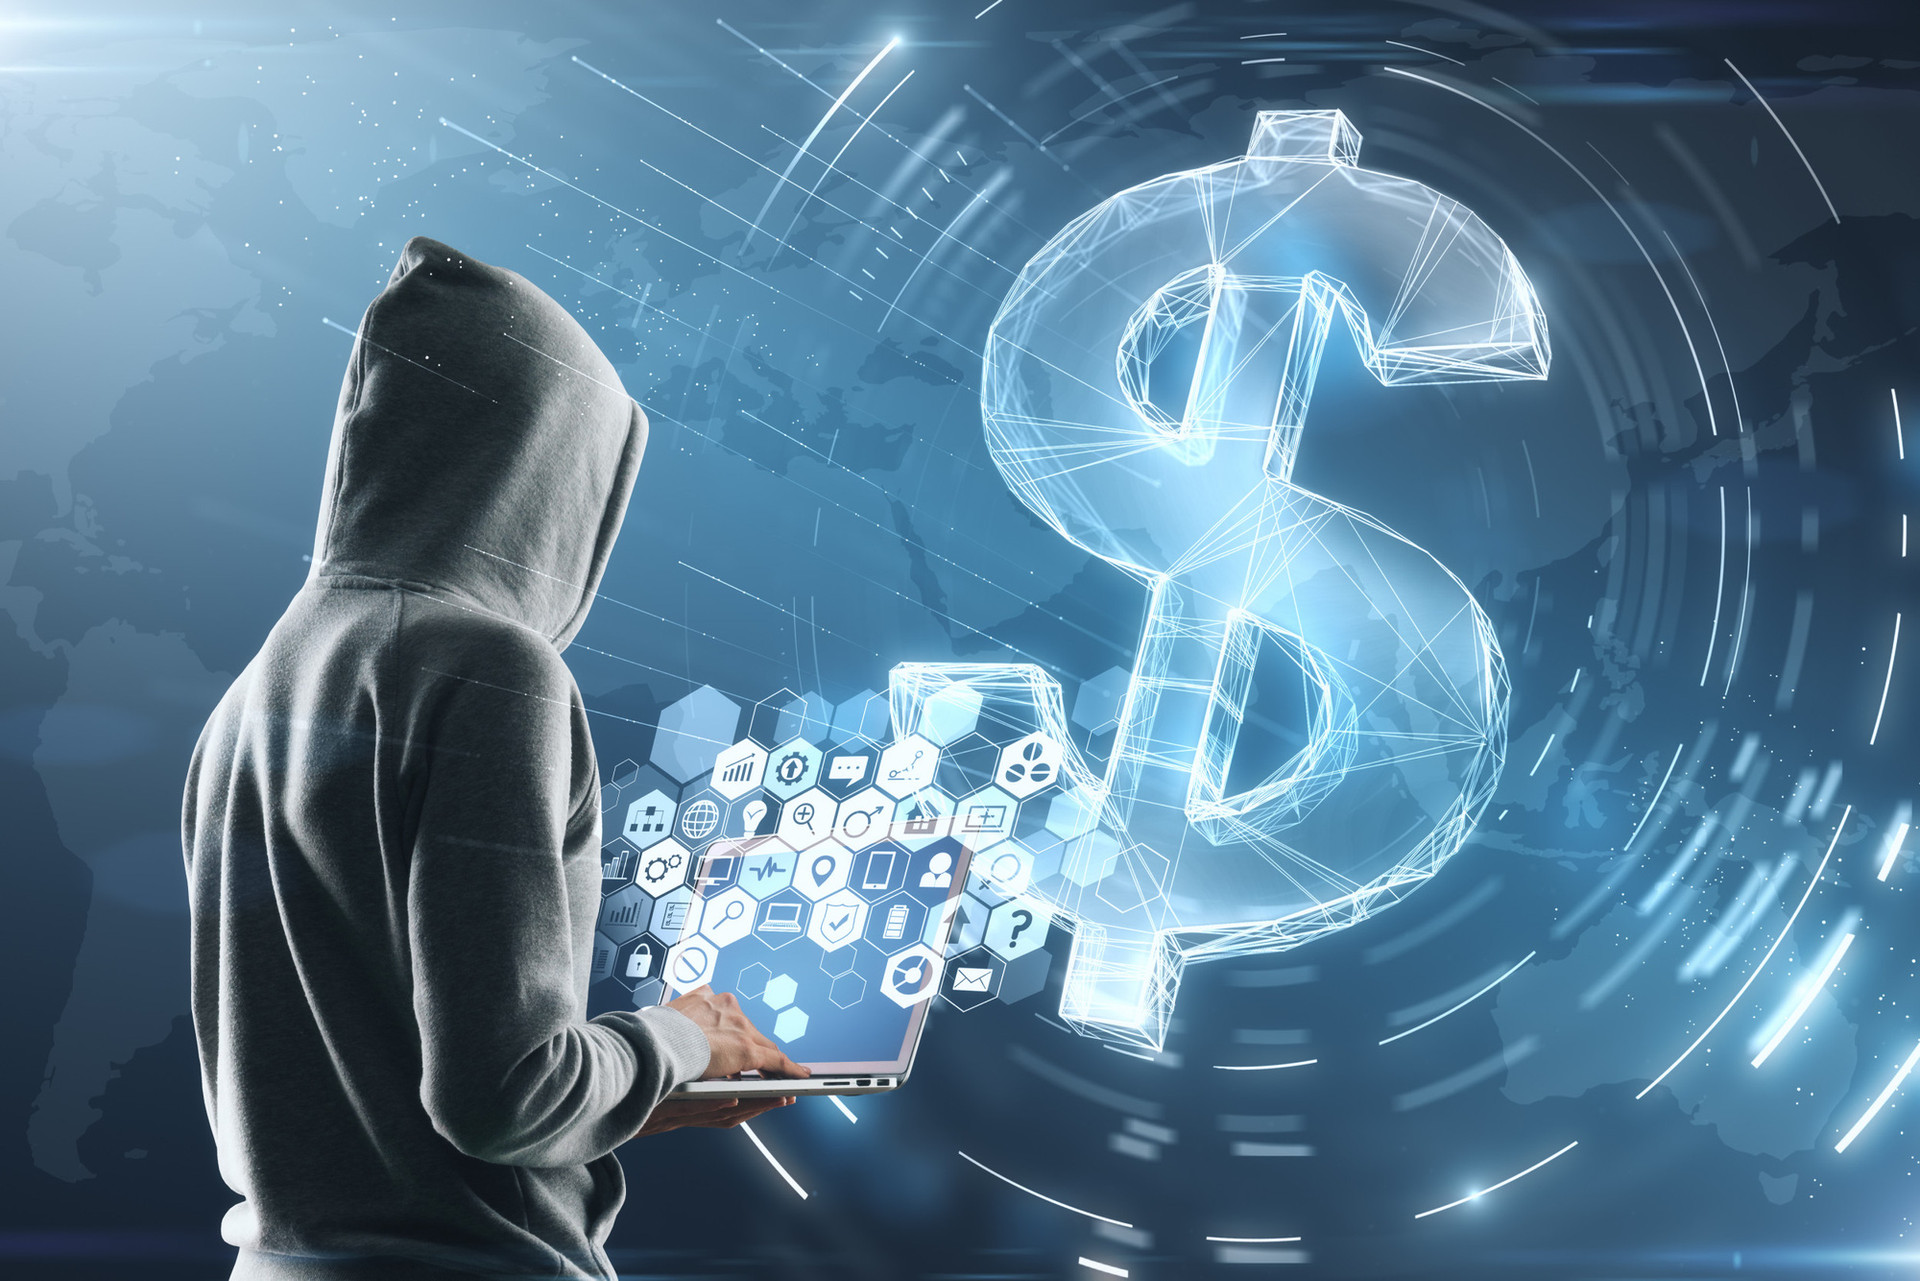 Sự lên ngôi của tiền điện tử tiếp tay cho các vụ tấn công ransomware như thế nào? - Ảnh 1.